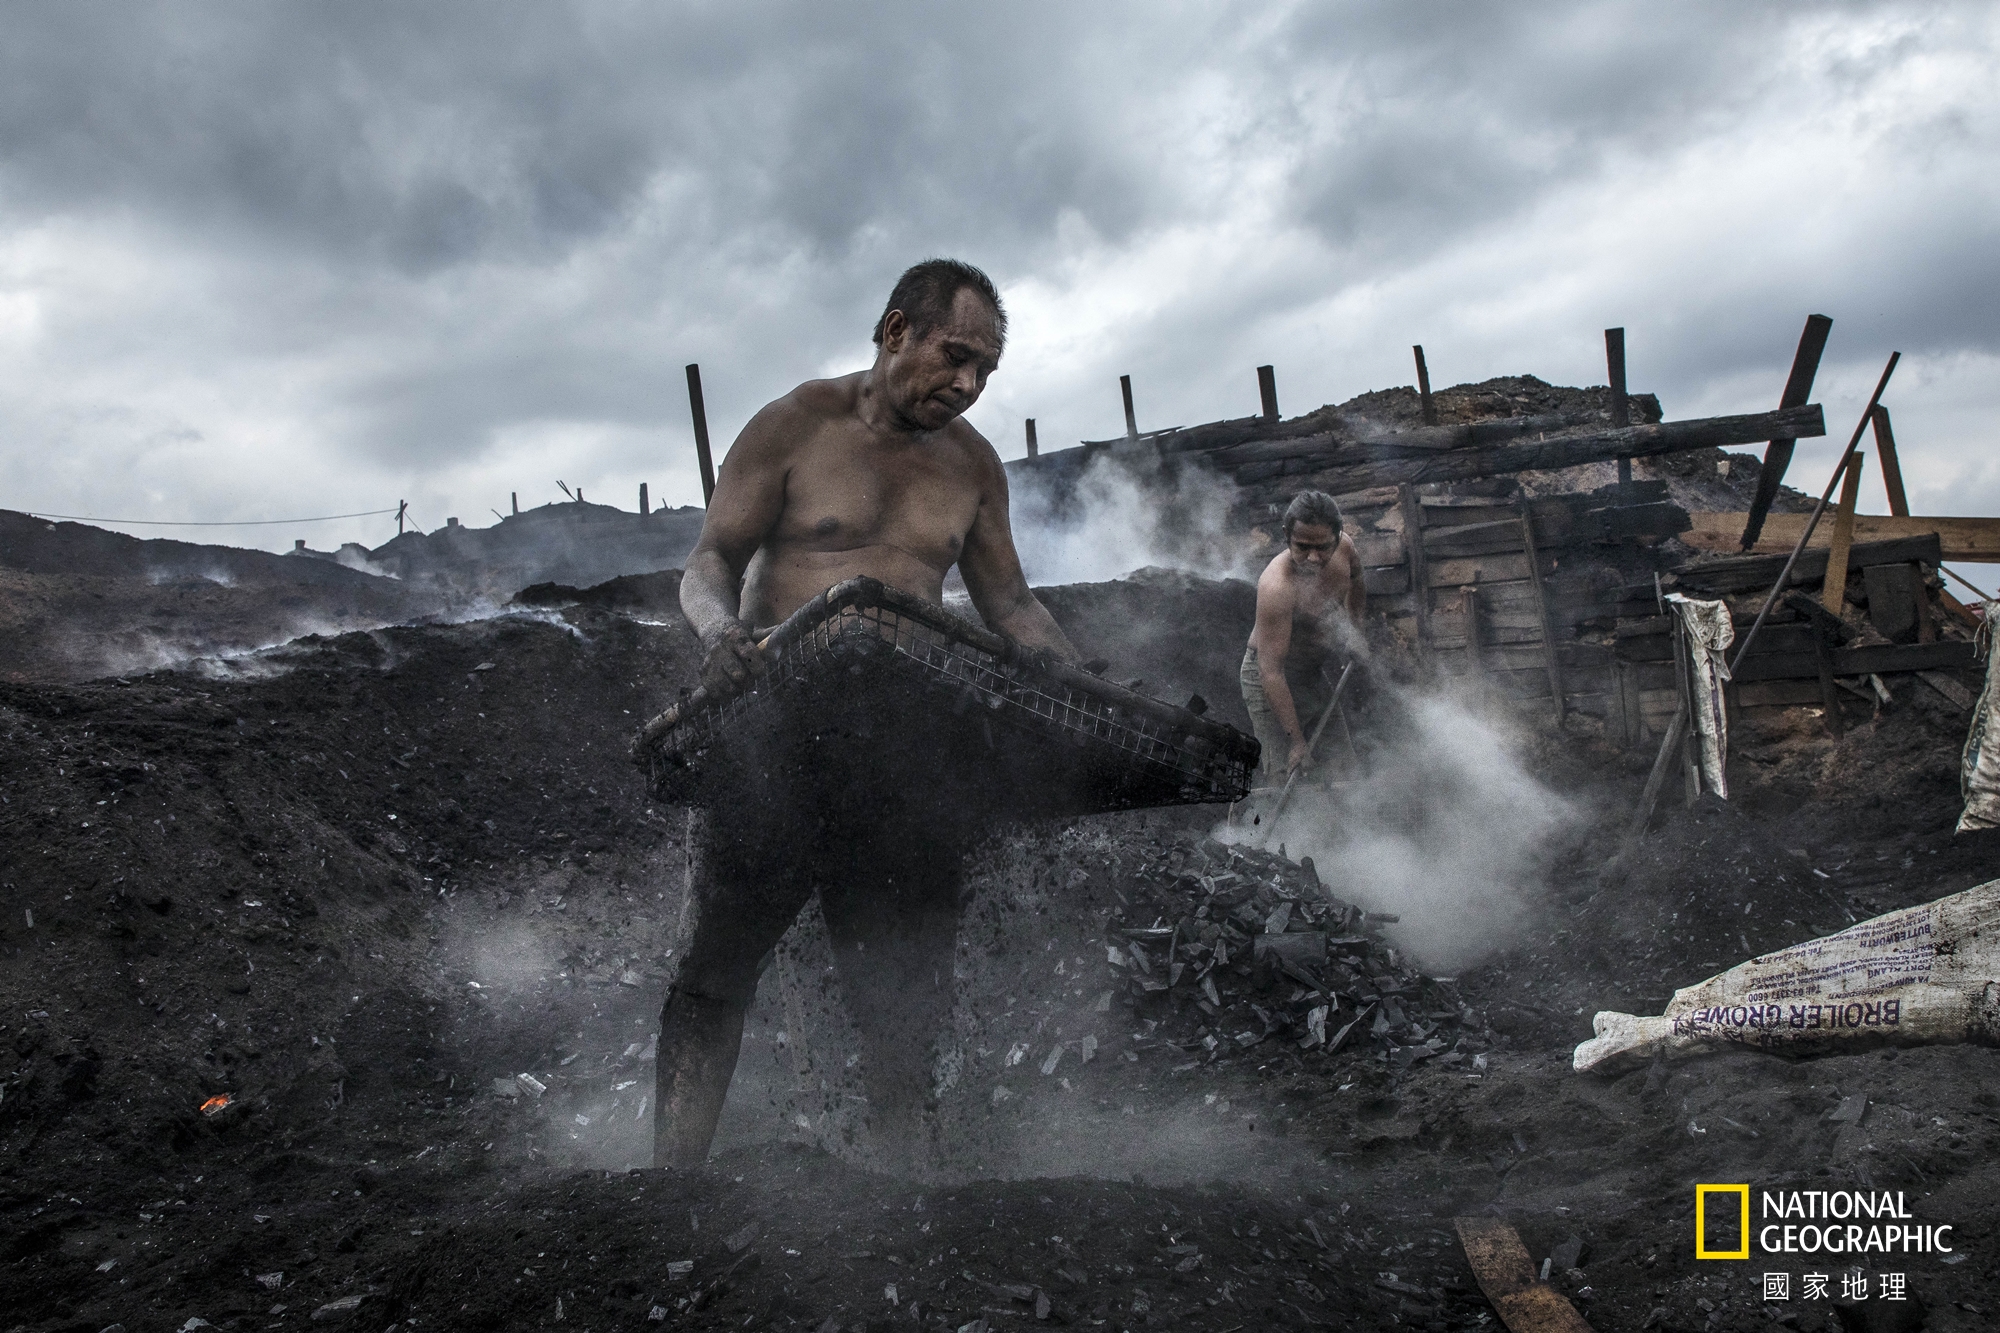 人物組冠軍：勤作 (攝影：張毅生)。在礦區的木炭移工不畏烈日風雨 , 每天勤奮地努力工作著。為了生活 , 儘管環境惡劣 , 仍要勇敢地奮鬥下去。